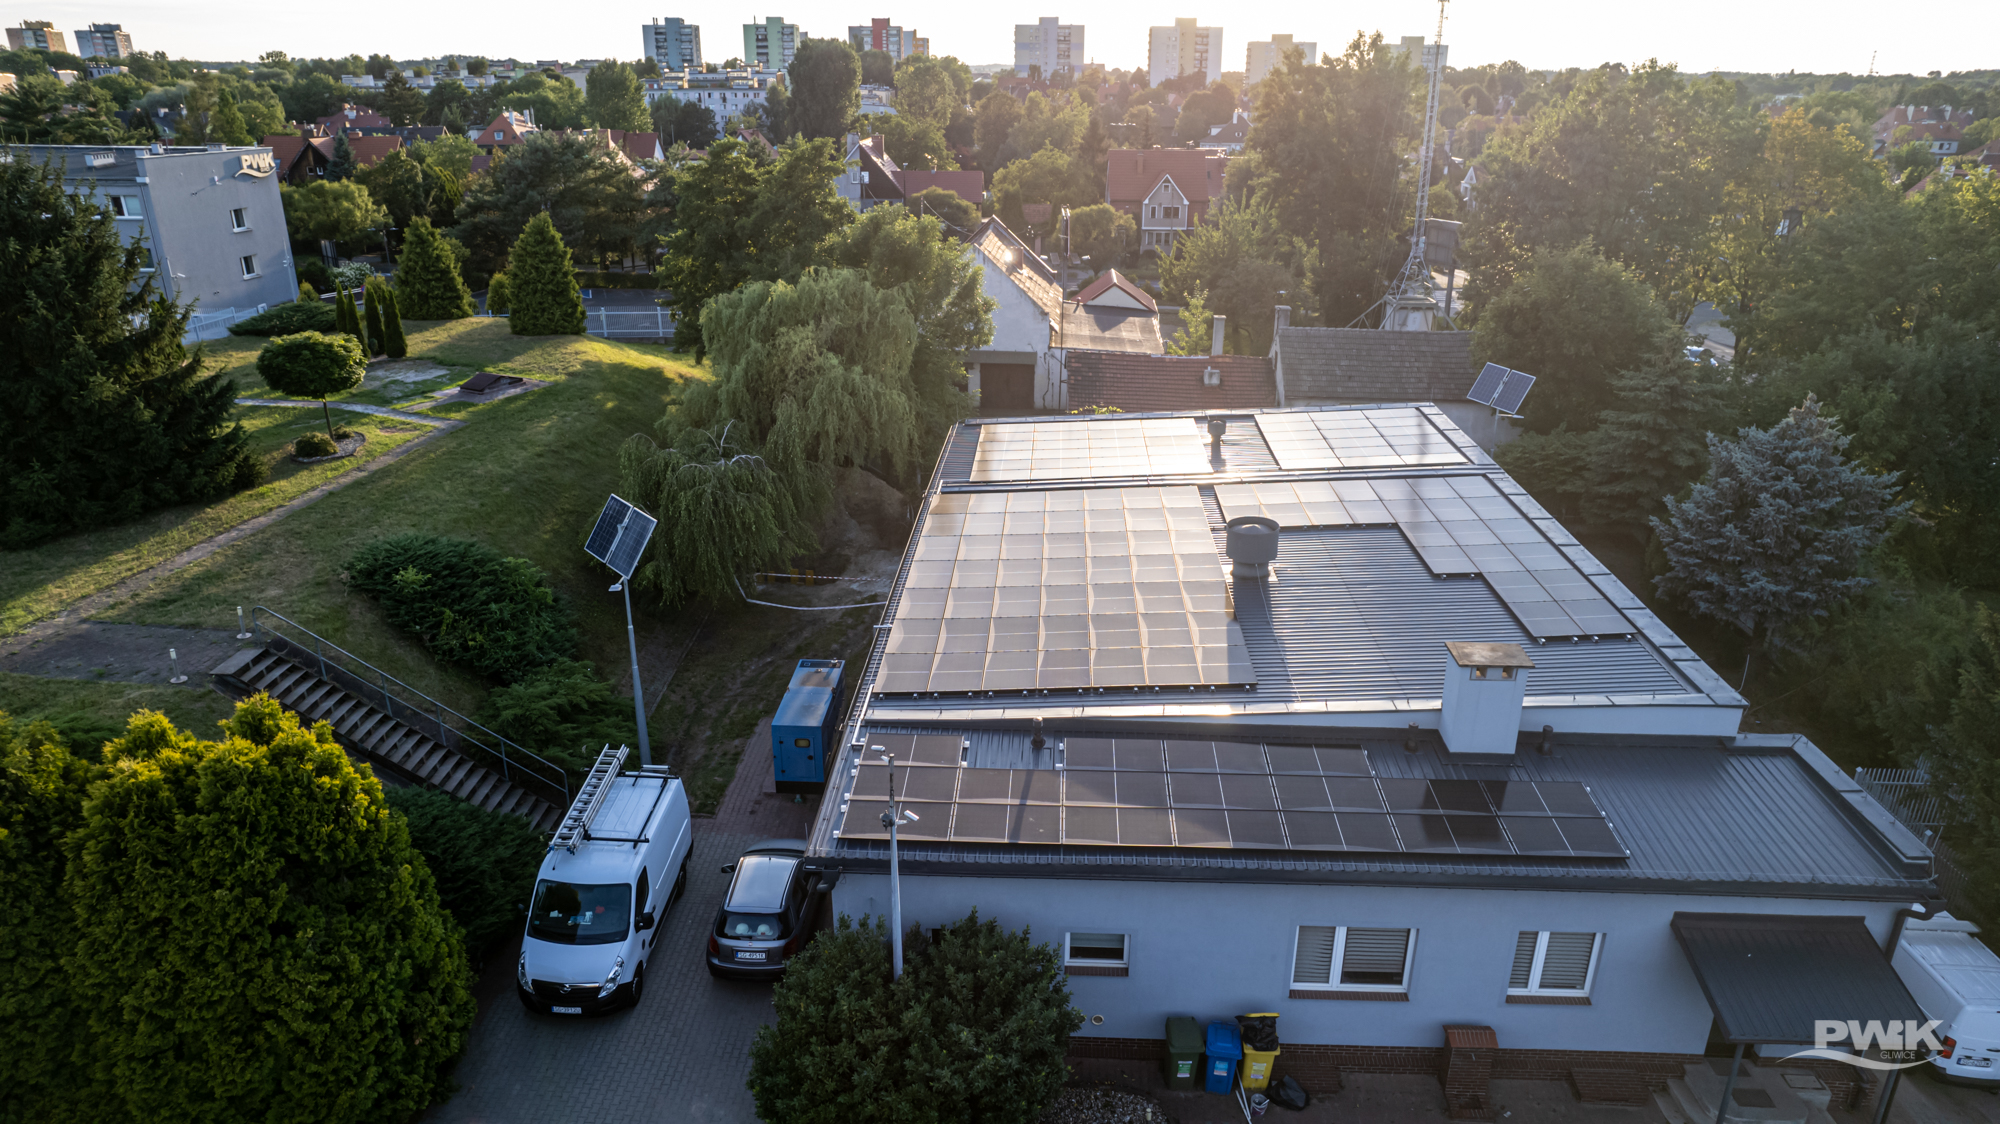 Instalacja fotowoltaiczna o mocy 48,5 kW, na dachach wybranych budynków pompowni